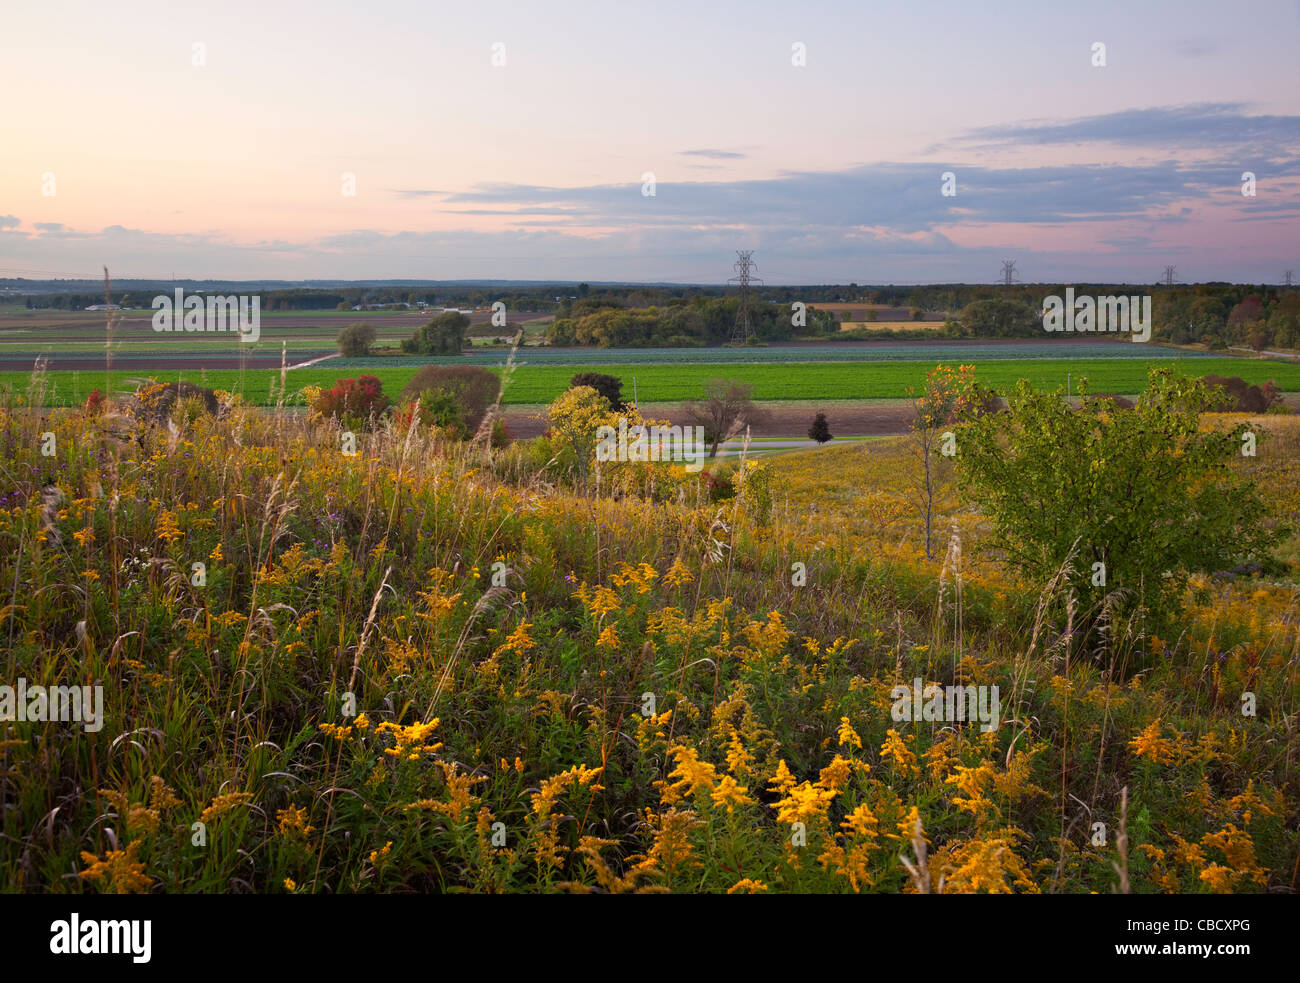 Coucher de soleil sur une section de l'Holland Marsh. Bradford West Gwillimbury, Ontario, Canada. Banque D'Images